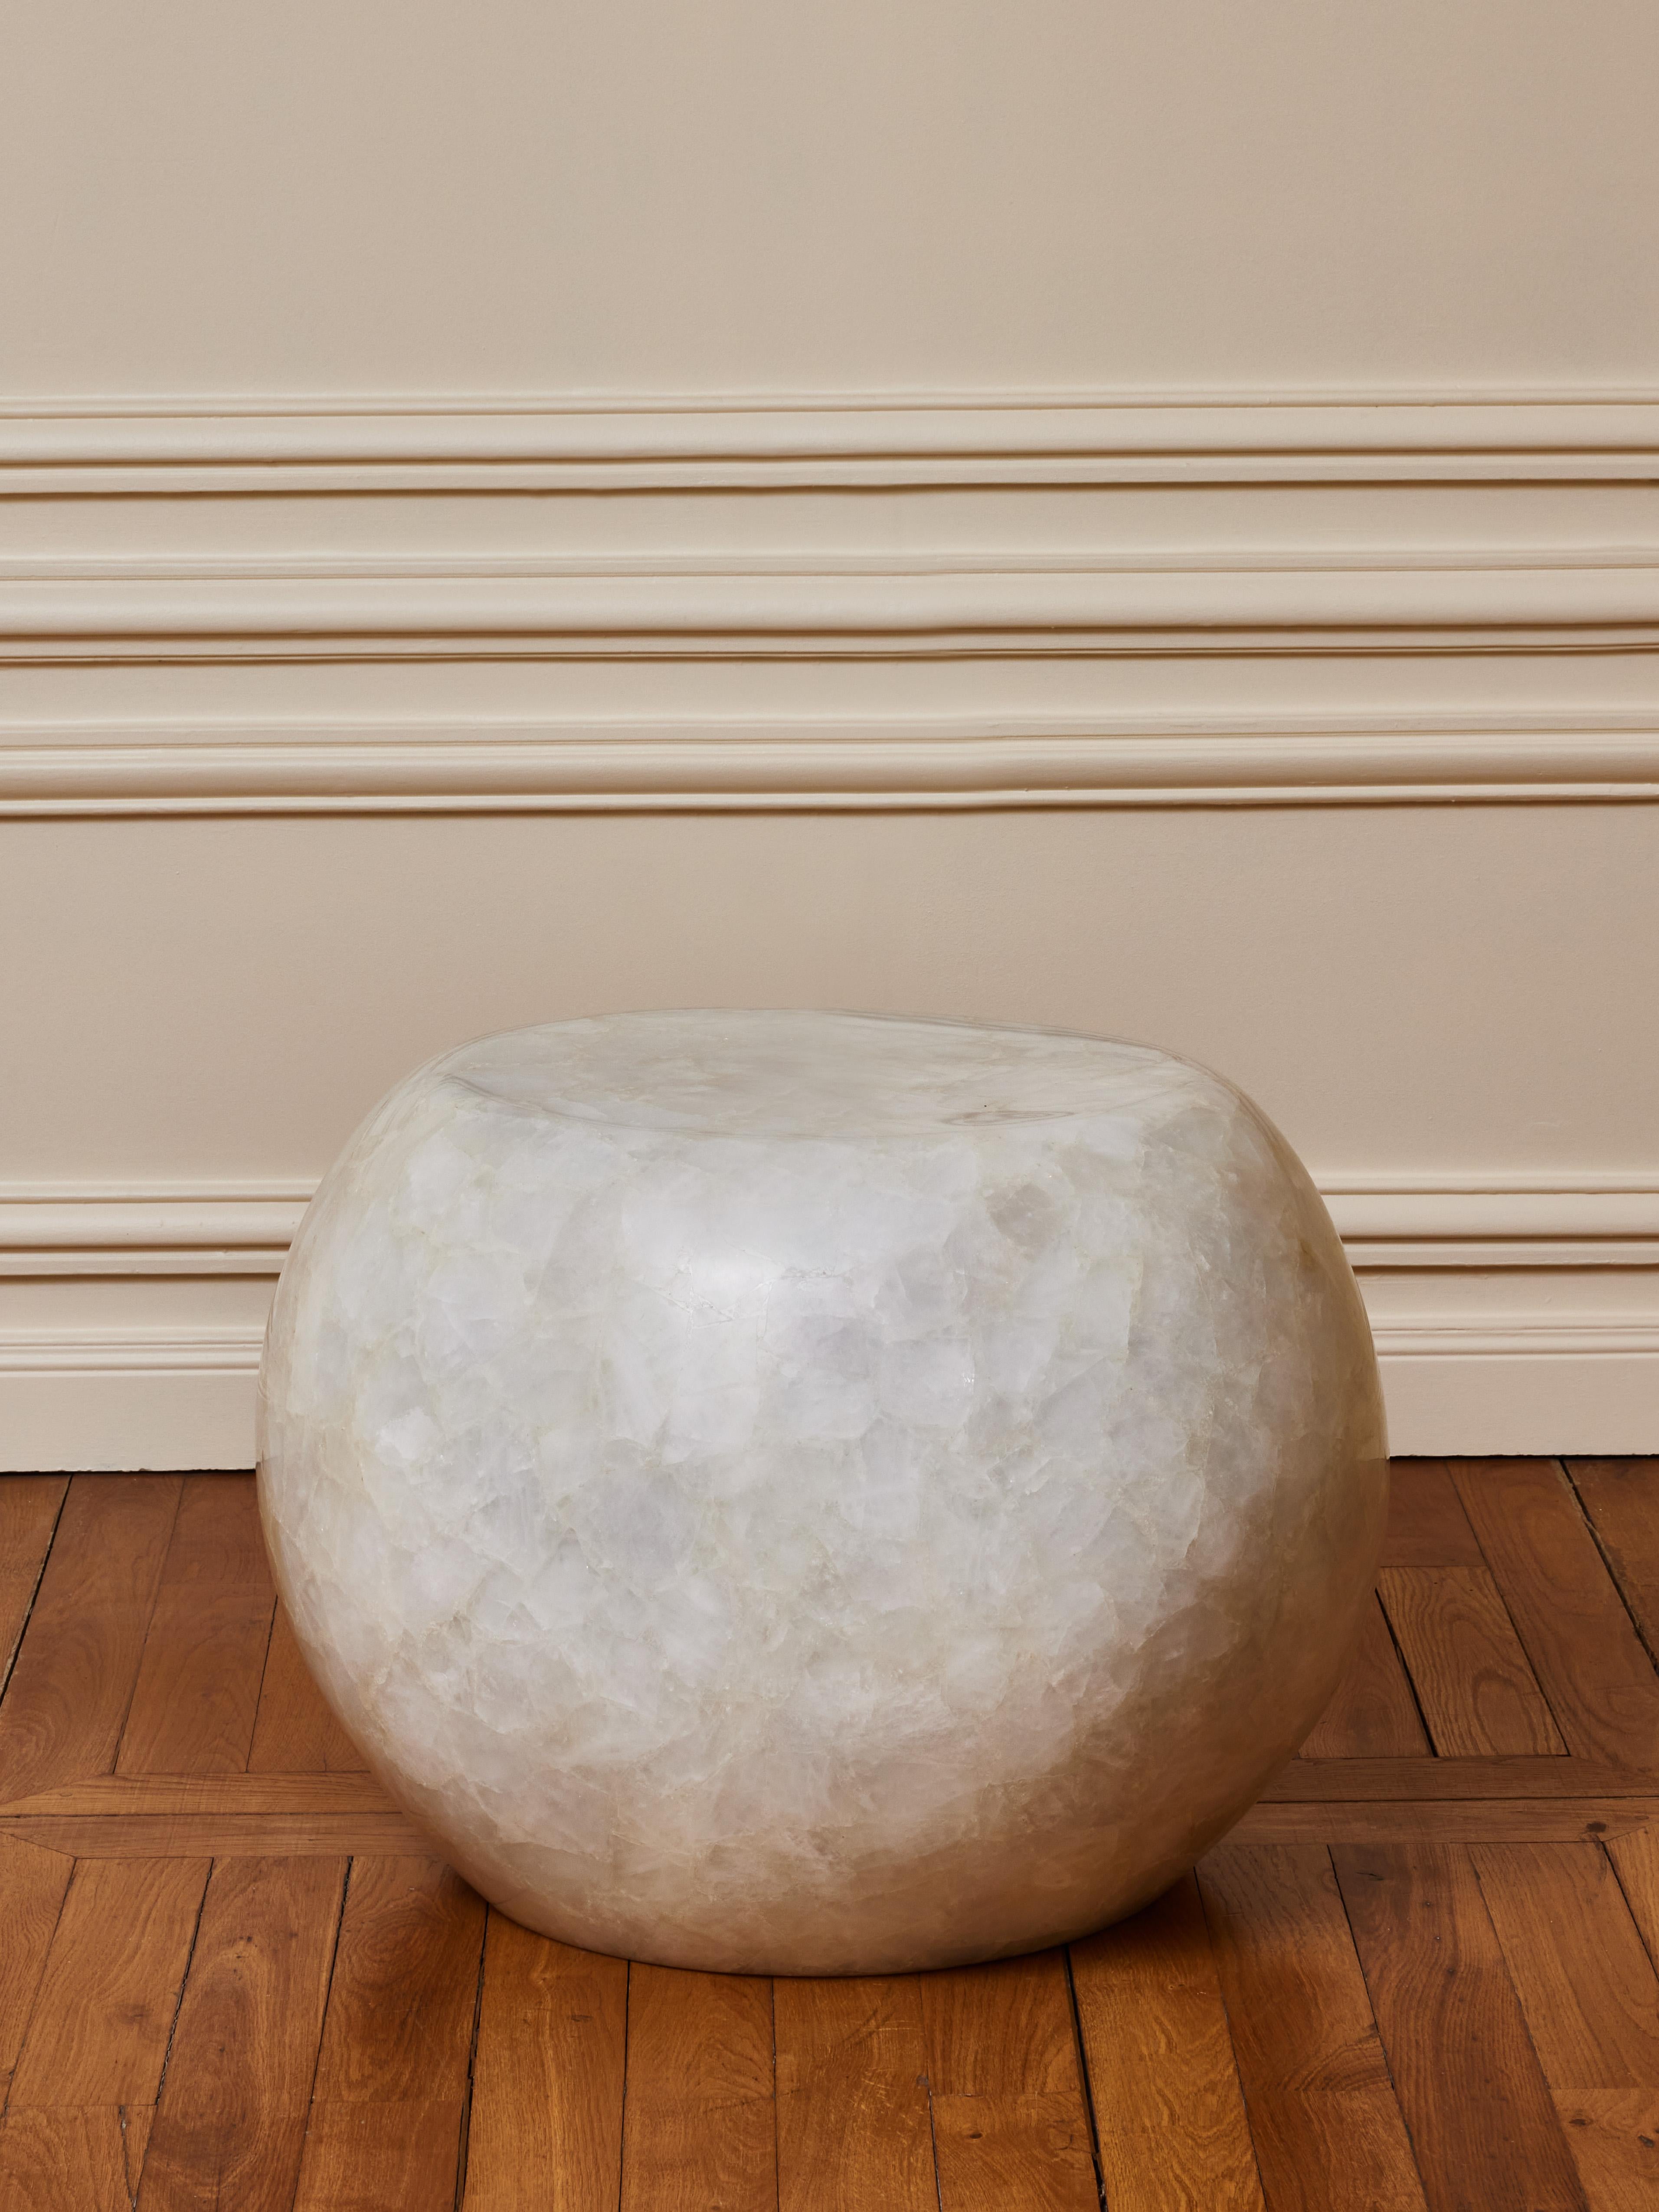 Superbe piédestal en cristal de roche sculpté.
Création par le Studio Glustin.
France, 2023.
